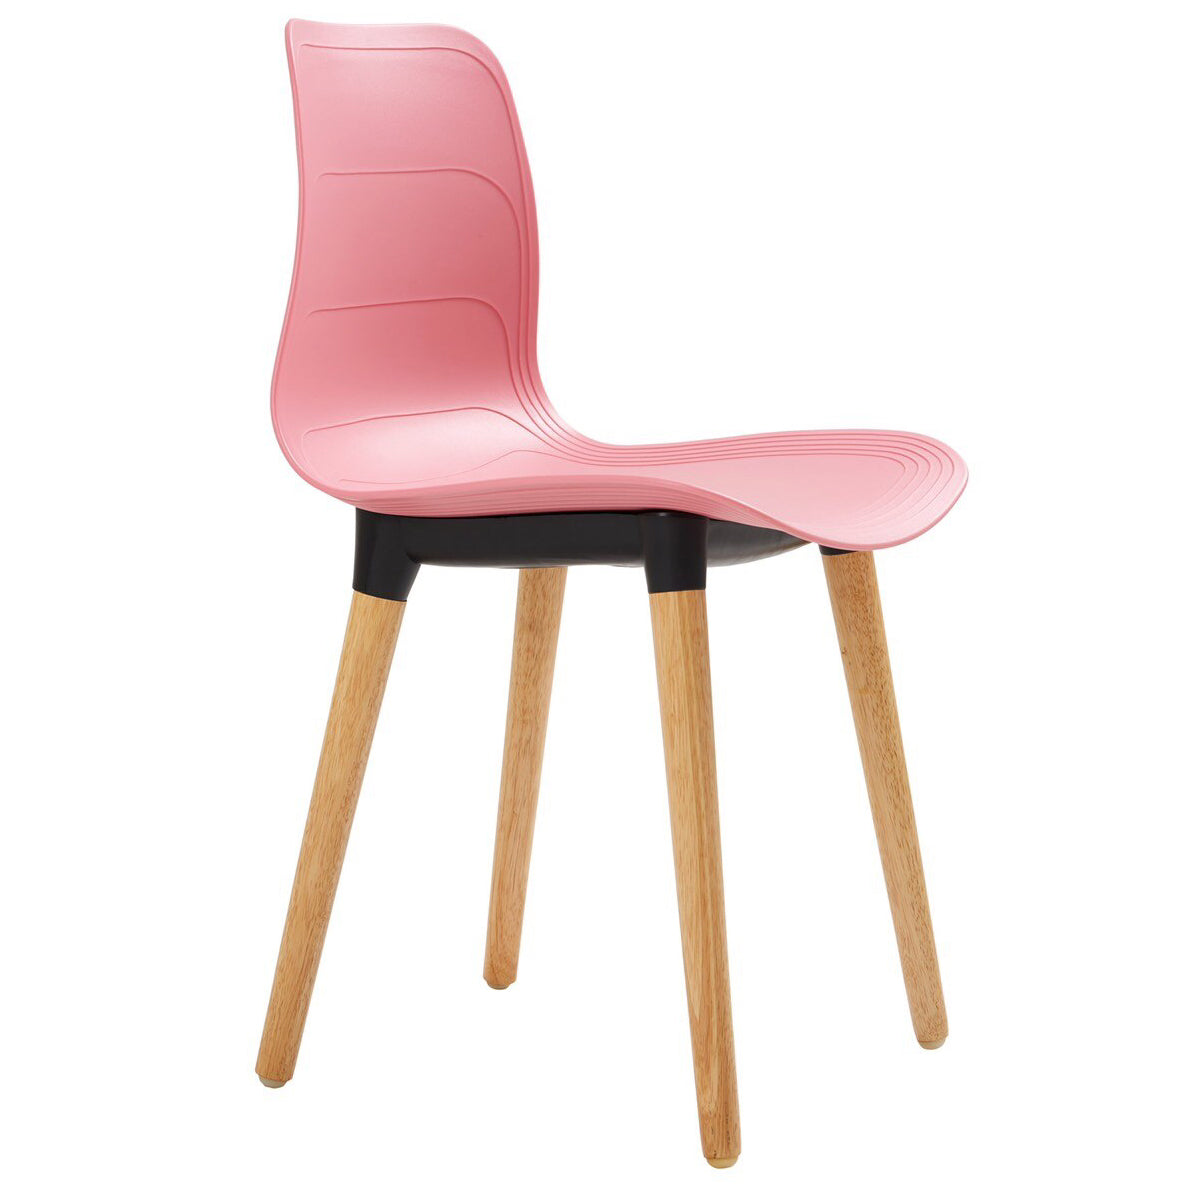 Ghế nhựa chân gỗ - HIFUWA - Hàng xuất khẩu - Màu hồng